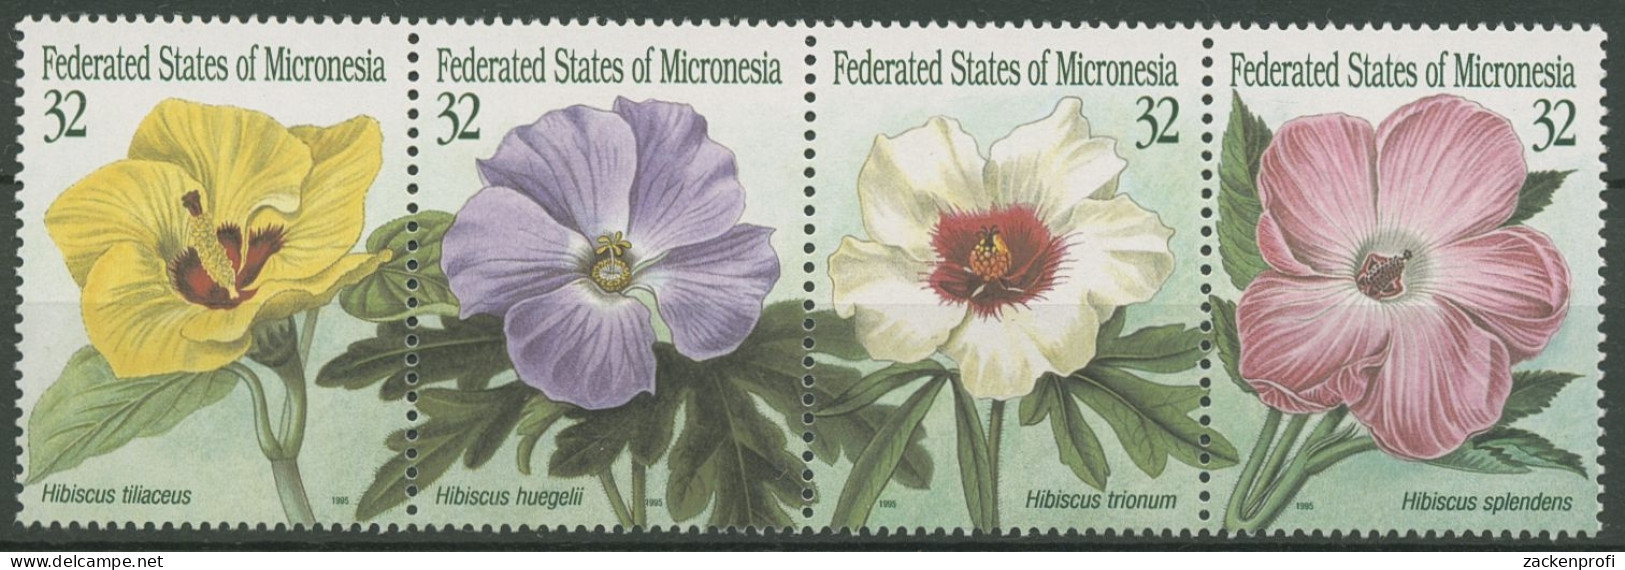 Mikronesien 1995 Hibiskusblüten 422/25 ZD Postfrisch (C74203) - Mikronesien